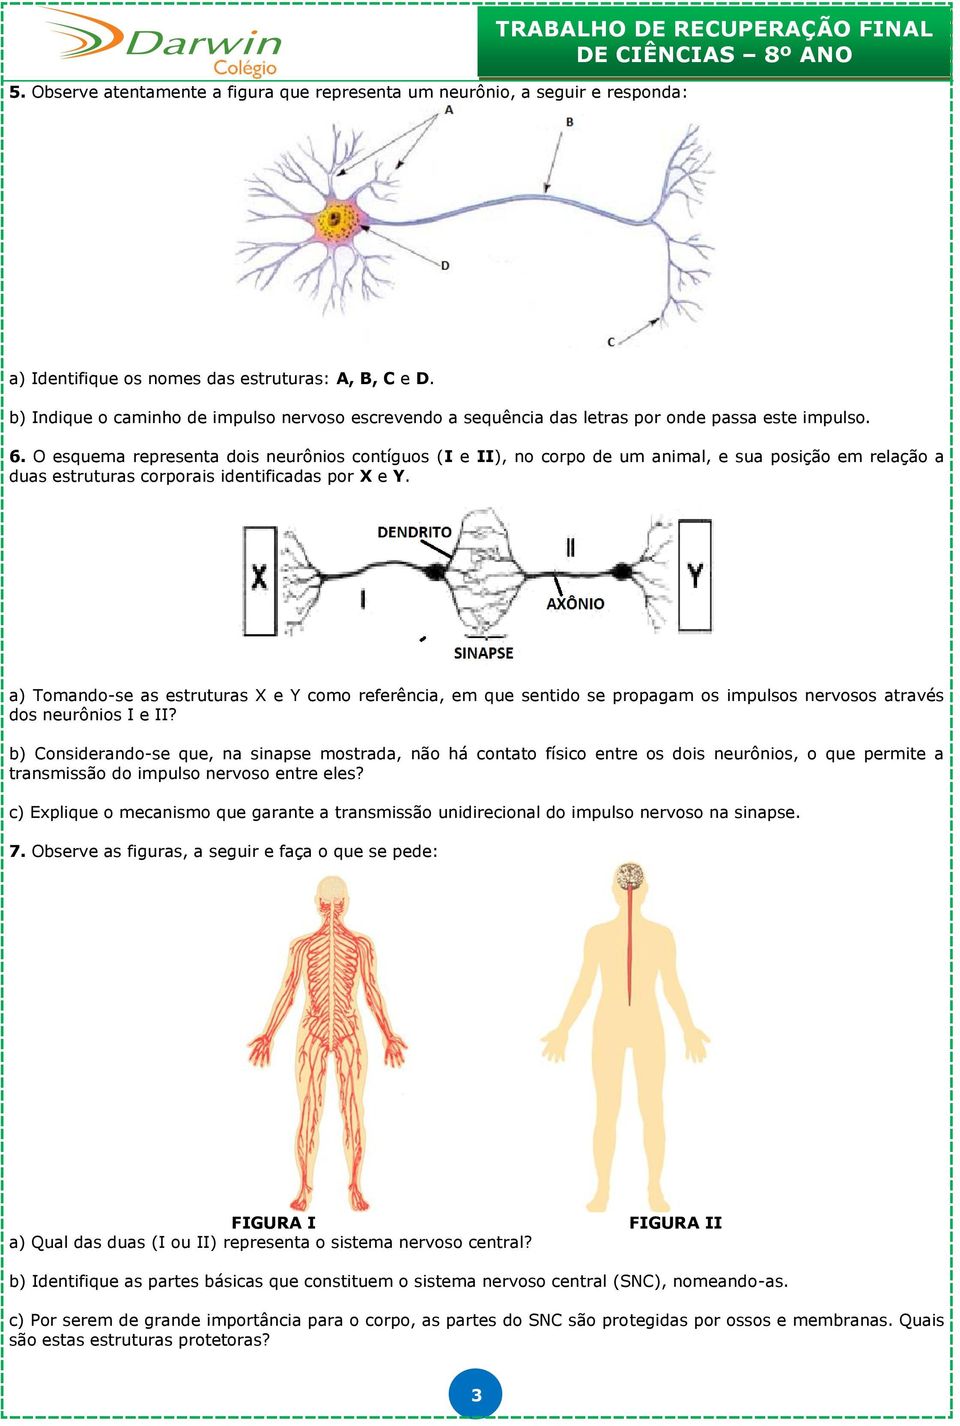 O esquema representa dois neurônios contíguos (I e II), no corpo de um animal, e sua posição em relação a duas estruturas corporais identificadas por X e Y.